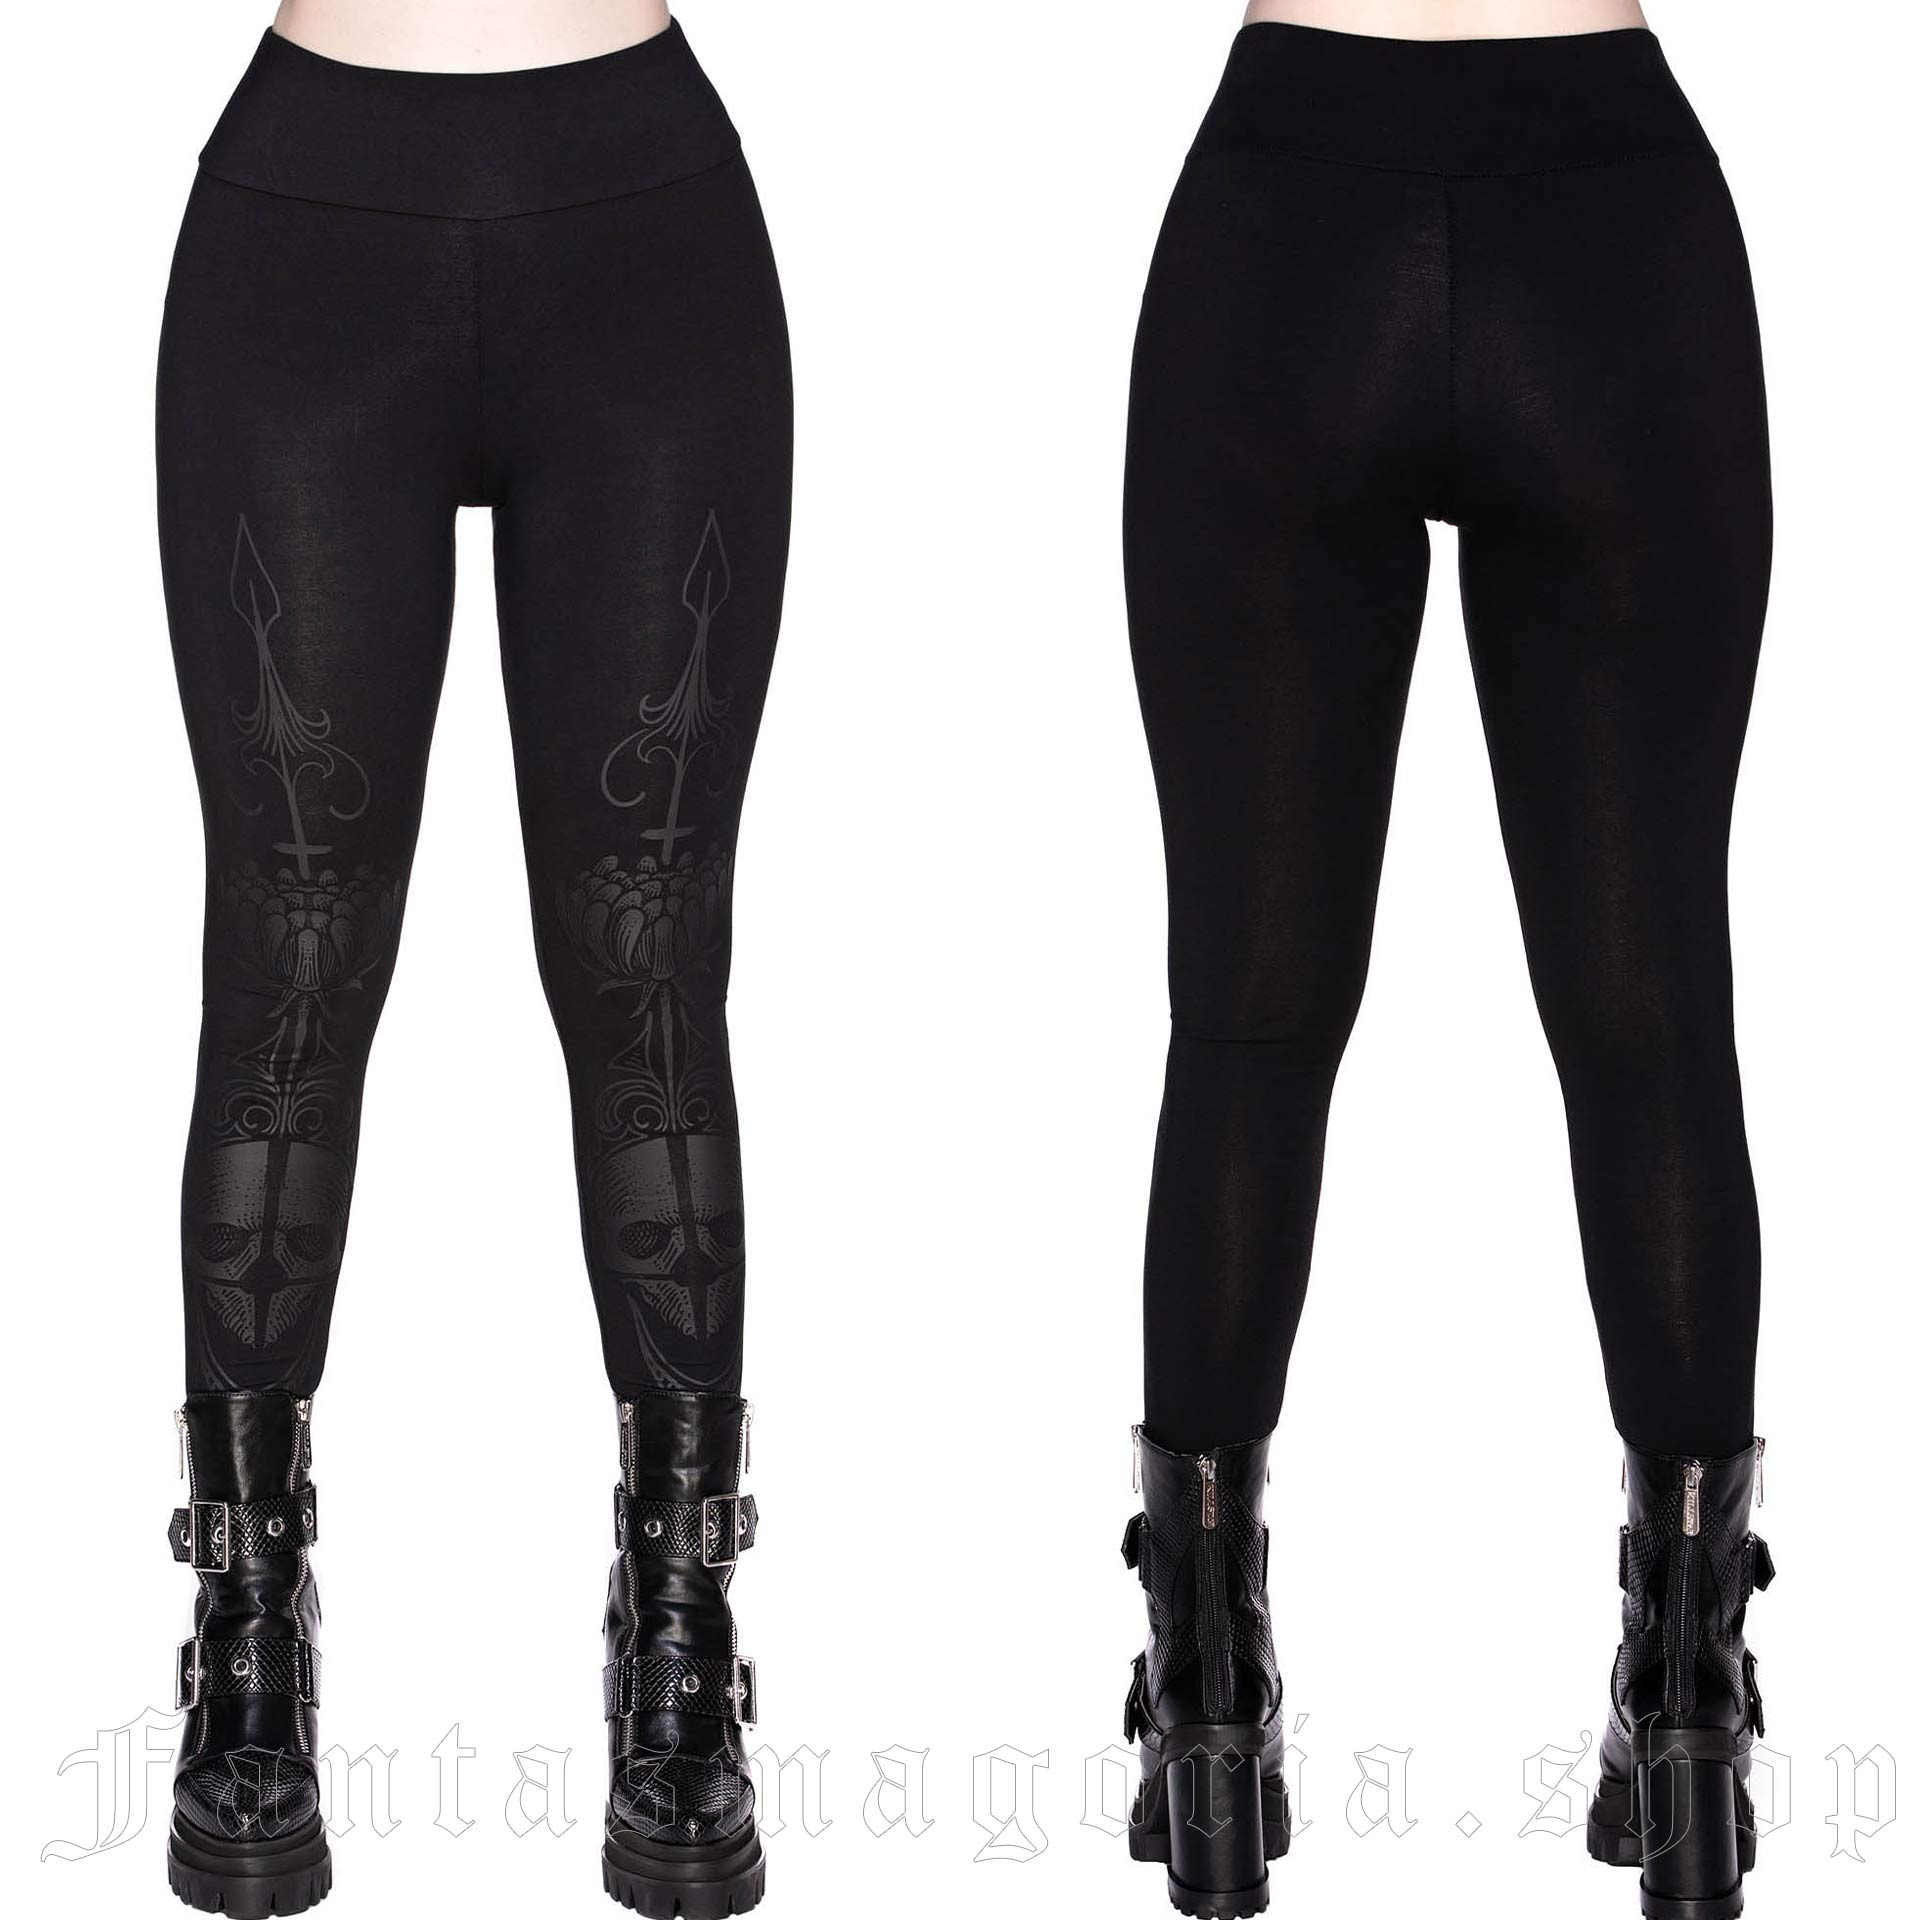 Black patterned leggings, Women's gothic clothing, Killstar